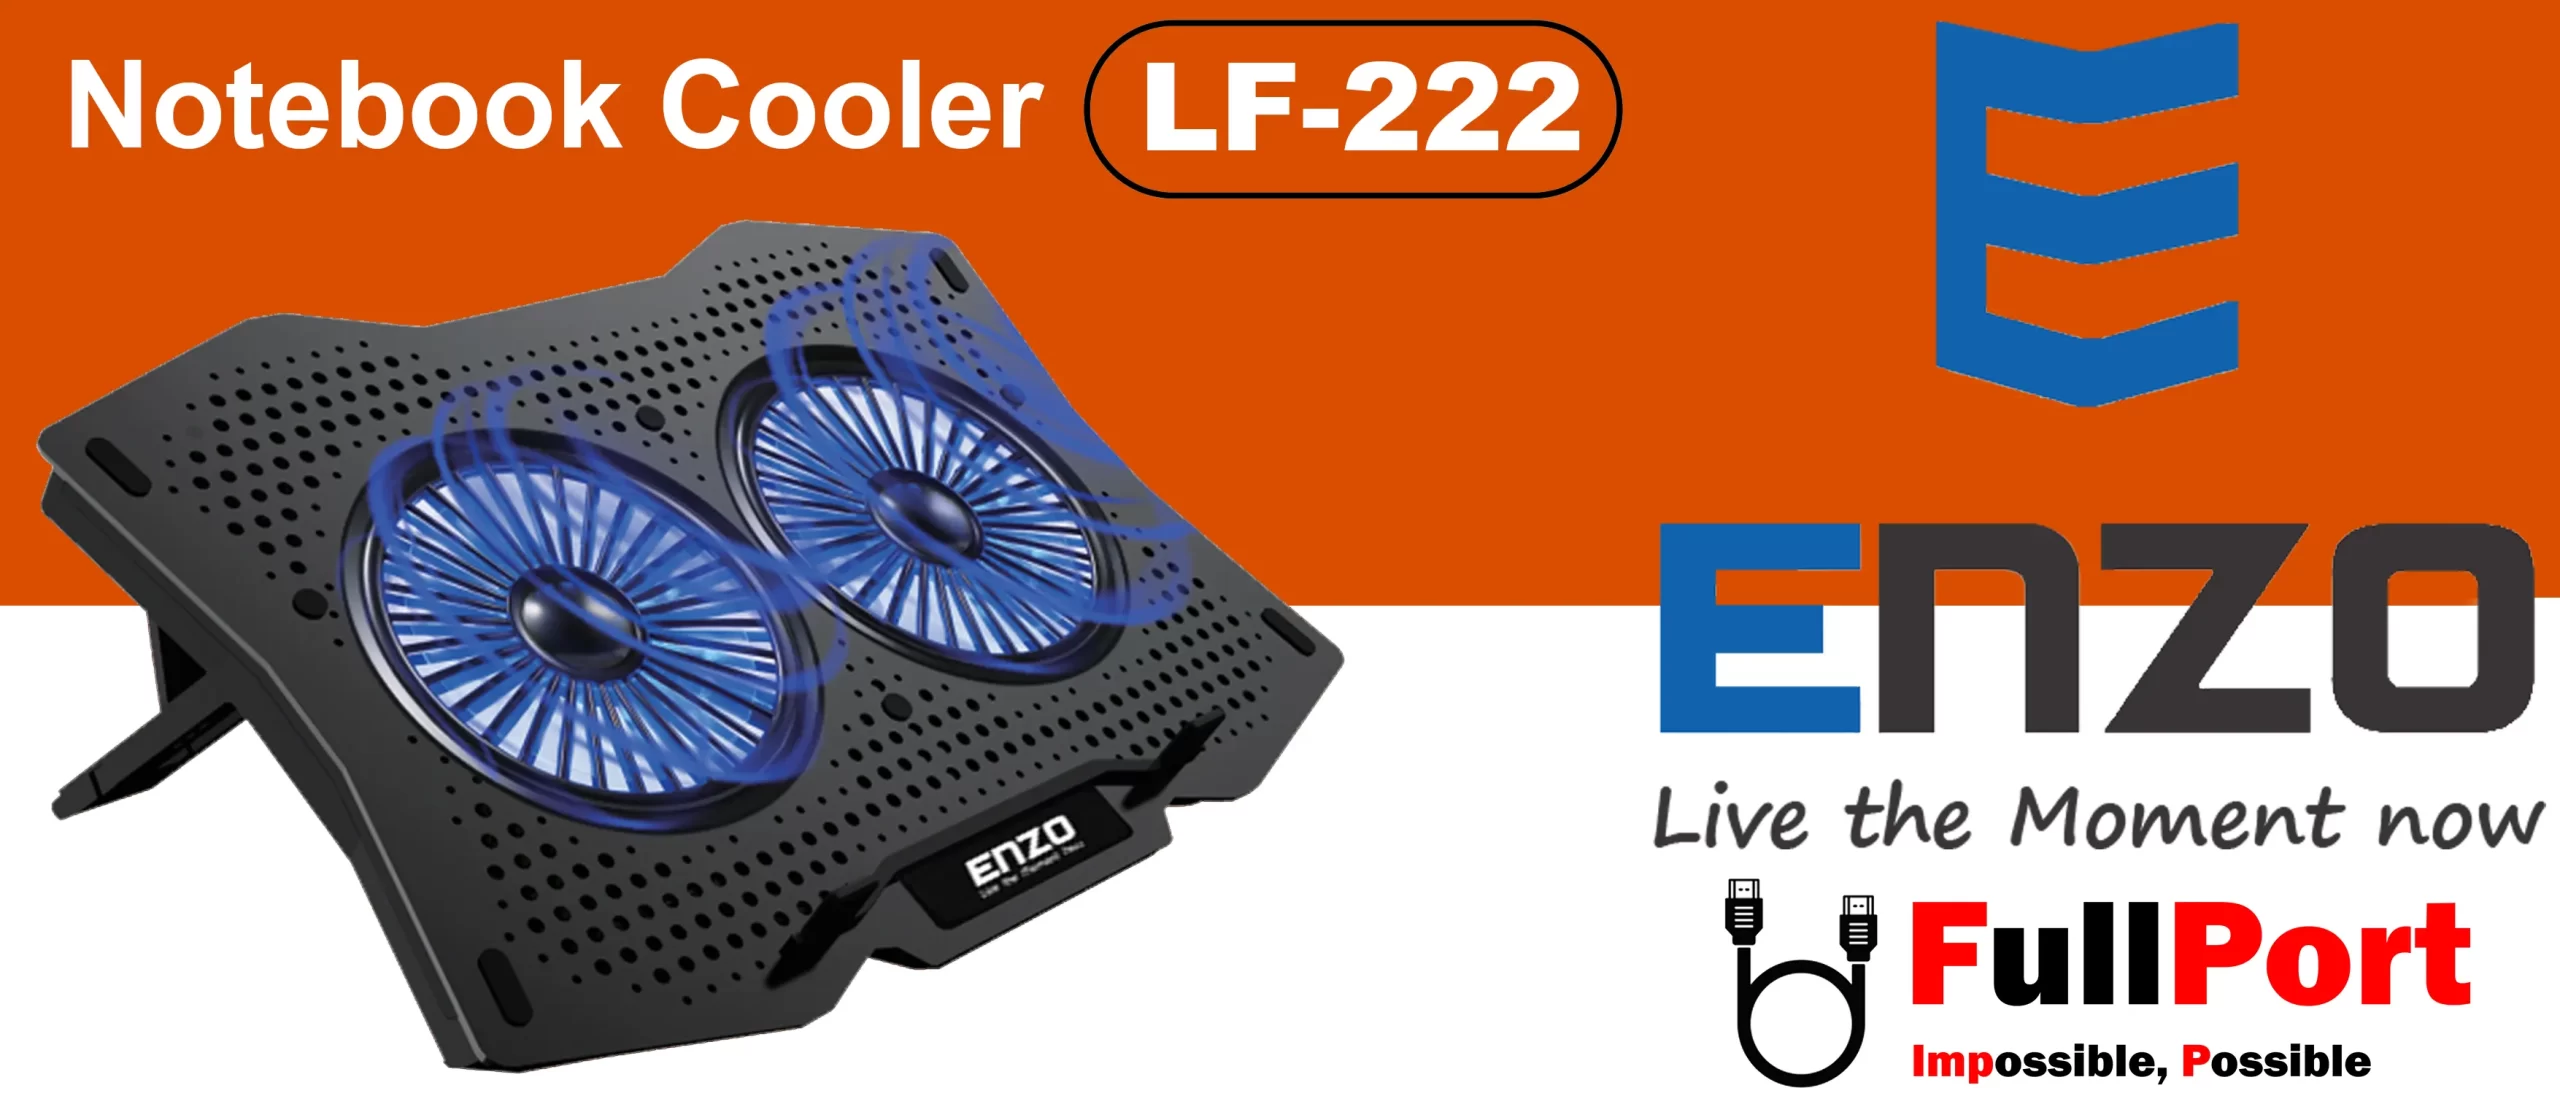 خرید پایه خنک کننده انزو | ENZO مدل LF-222 از فروشگاه اینترنتی فول پورت